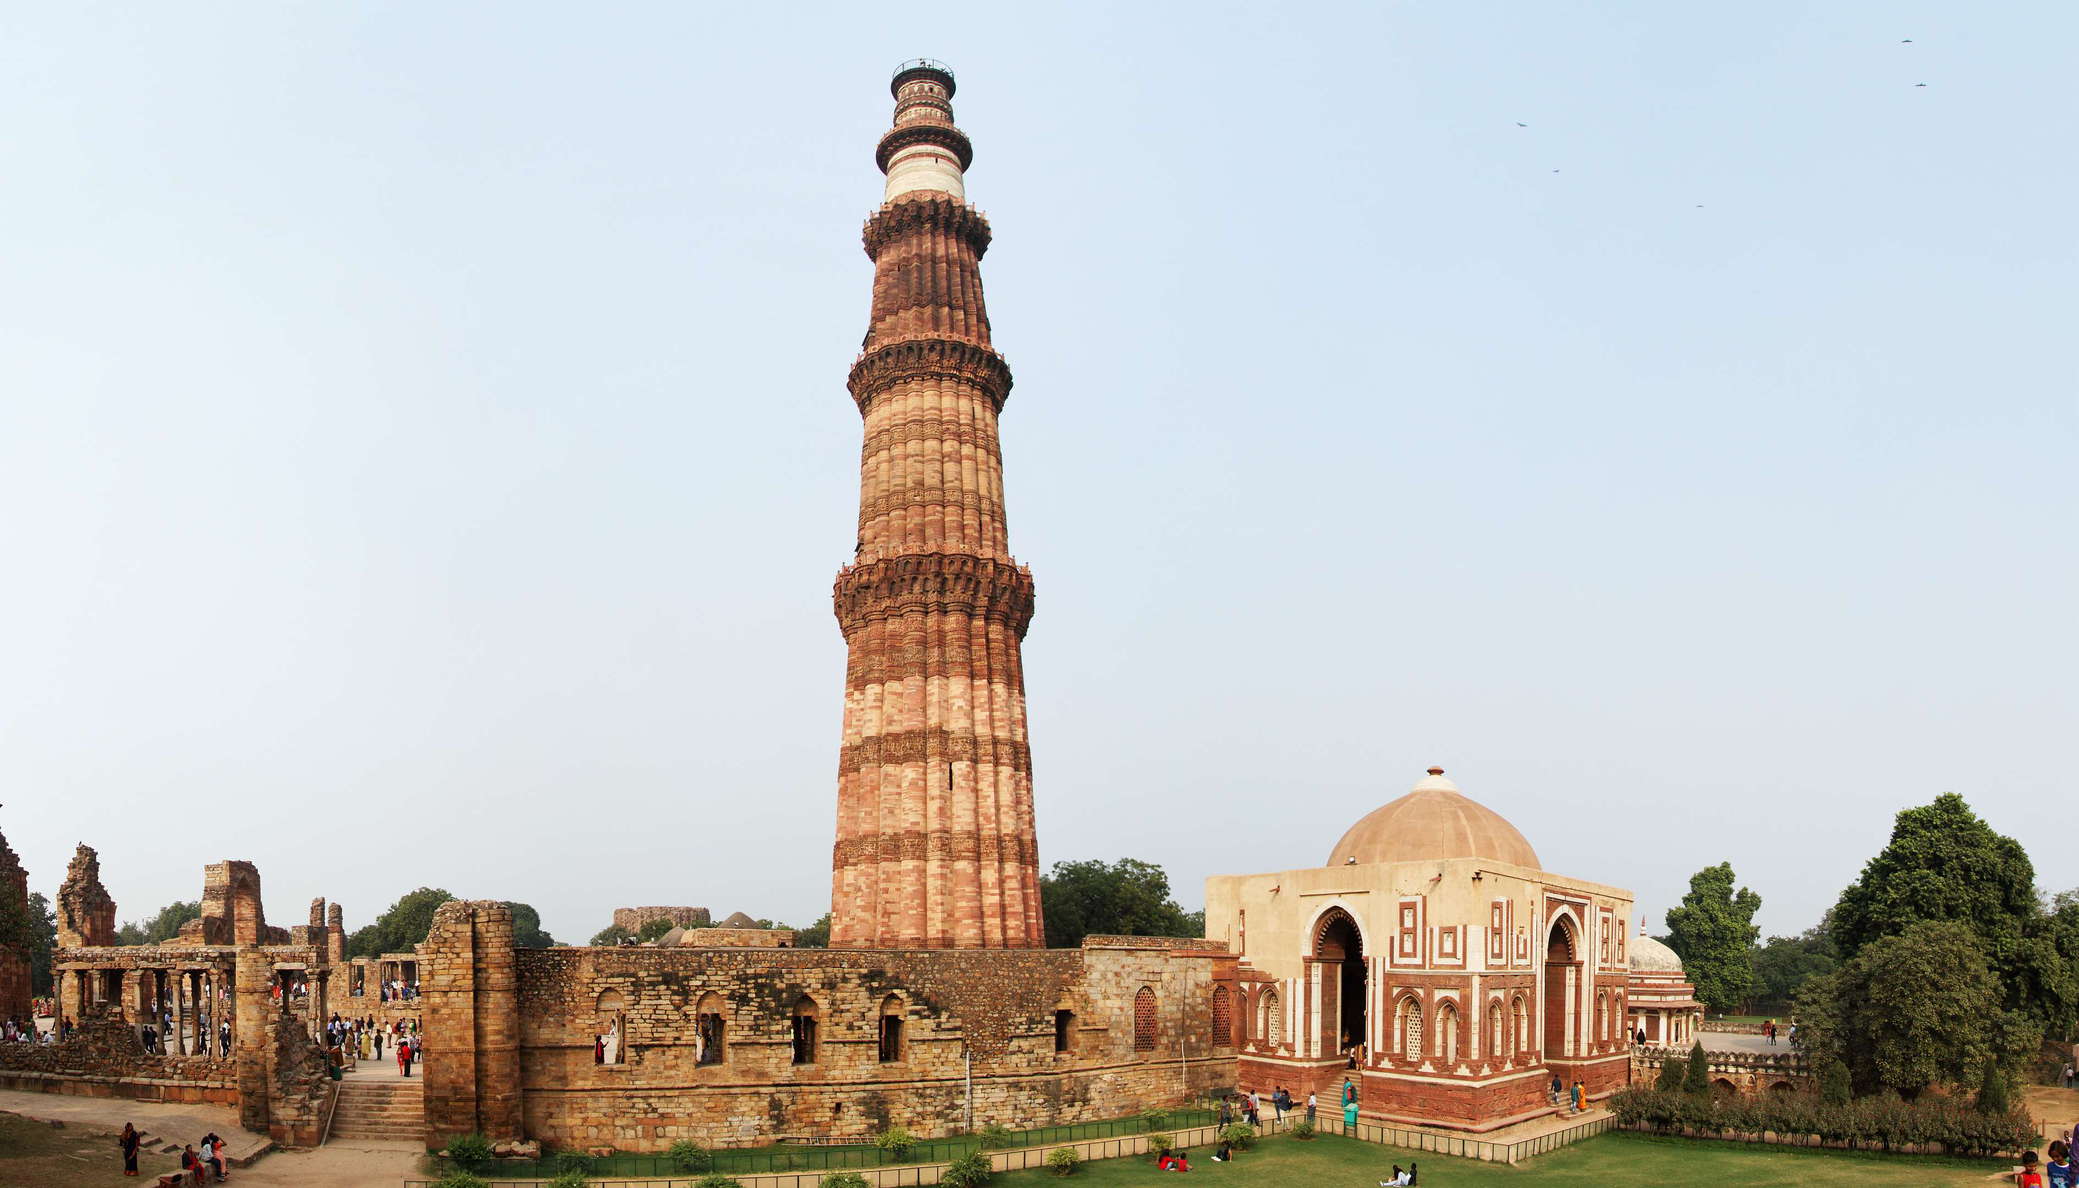 Delhi  |  Qutb Complex with Qutub Minar